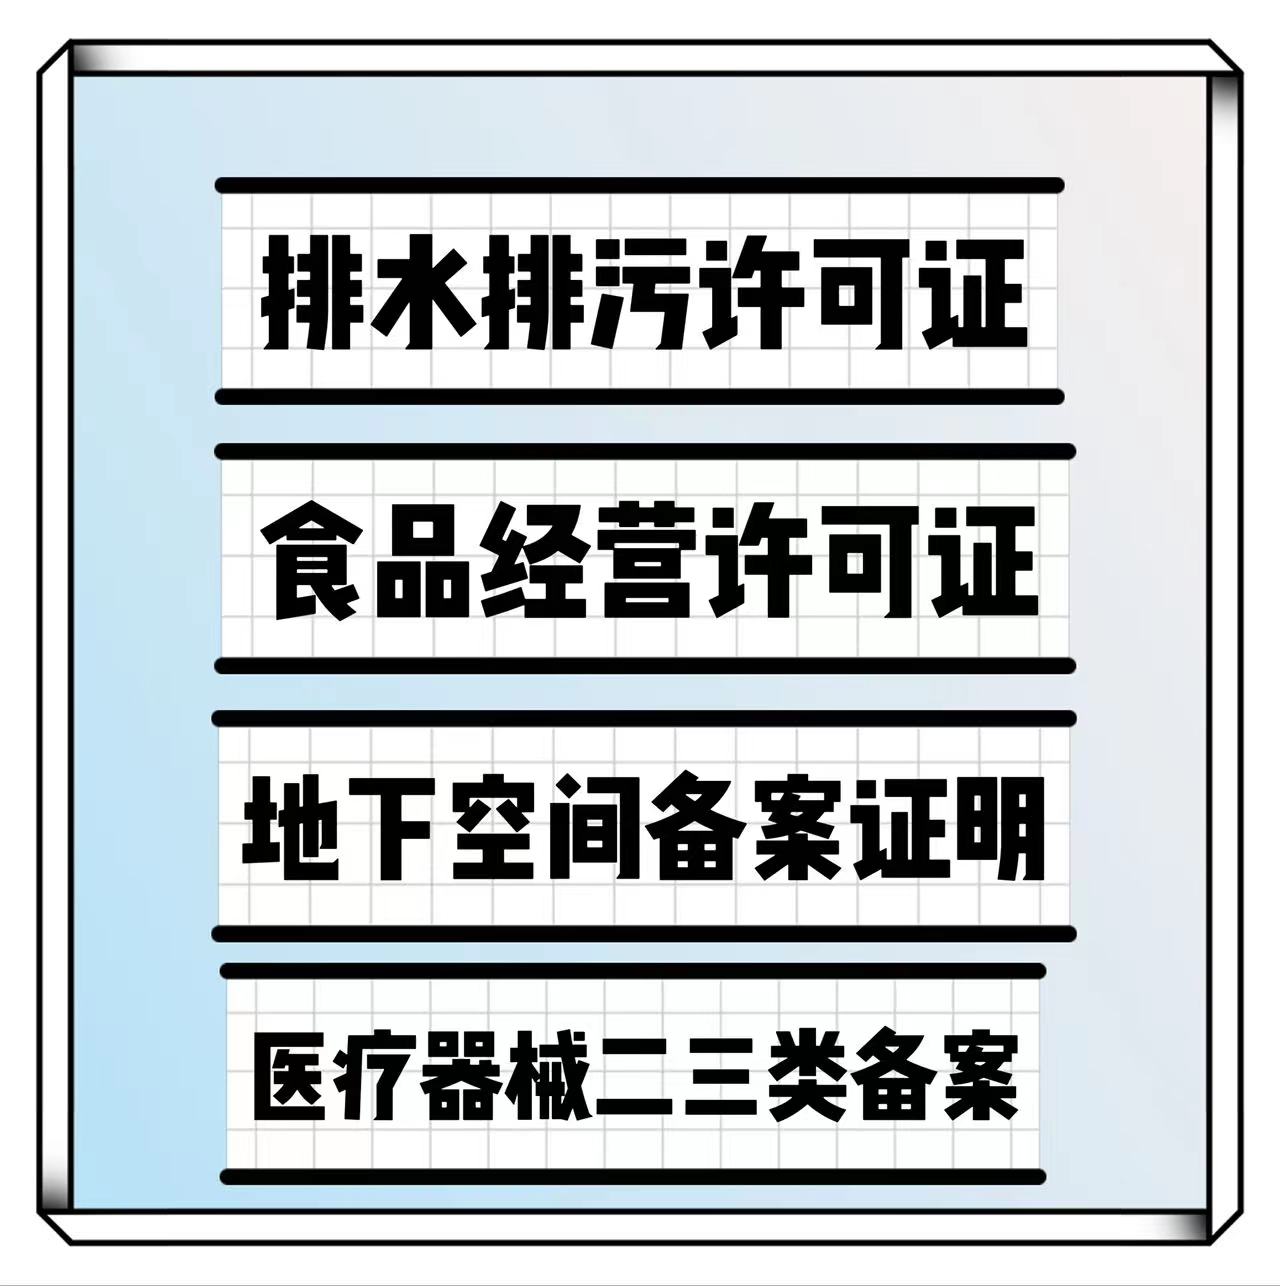 条件*代办疑难城镇排水排污许可证北京东城区